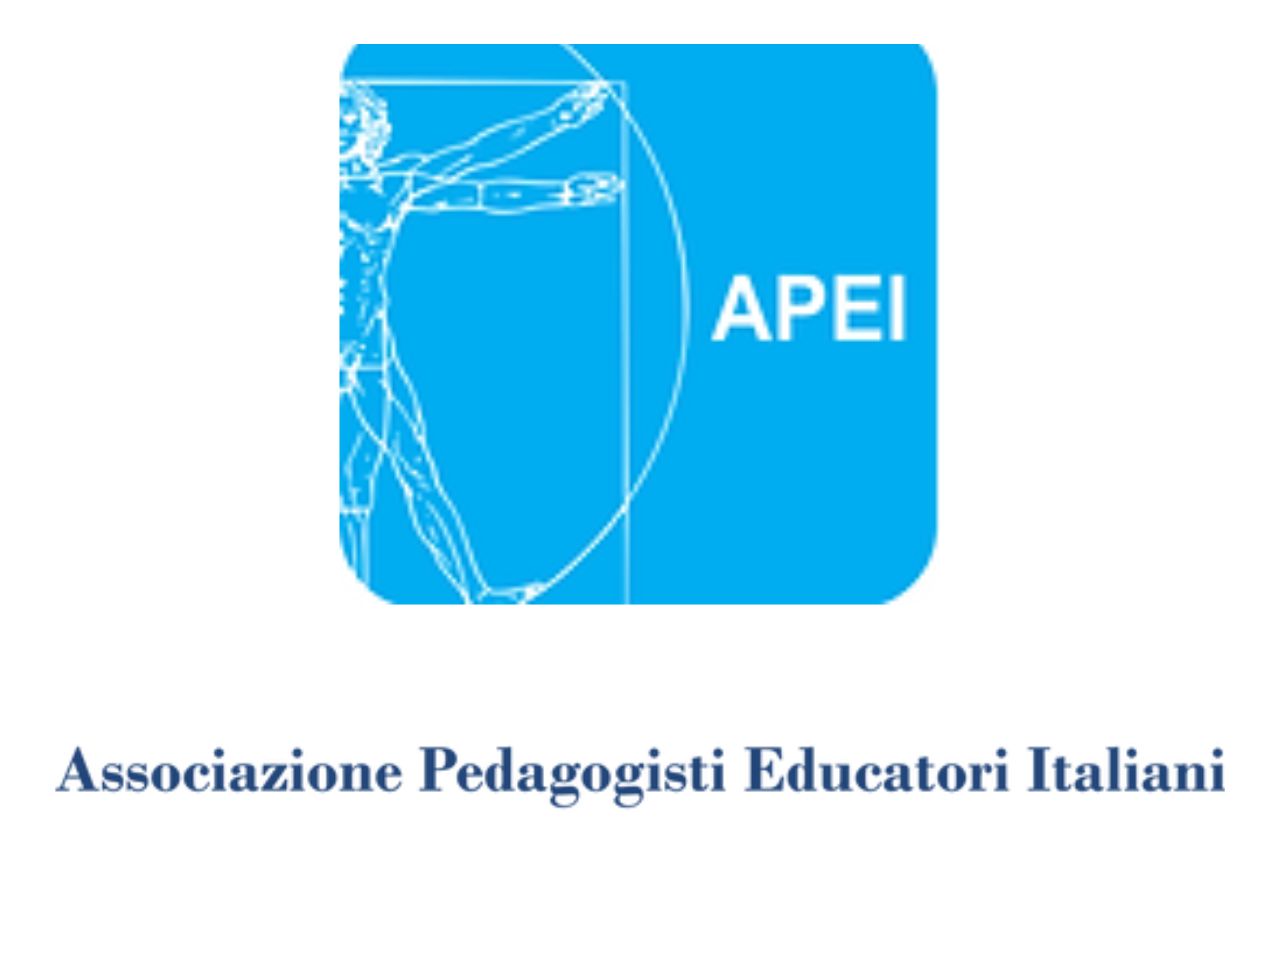 Tavolo Asp, Apei Marche: “Gli educatori non mancano, sono sfruttati e sottopagati”